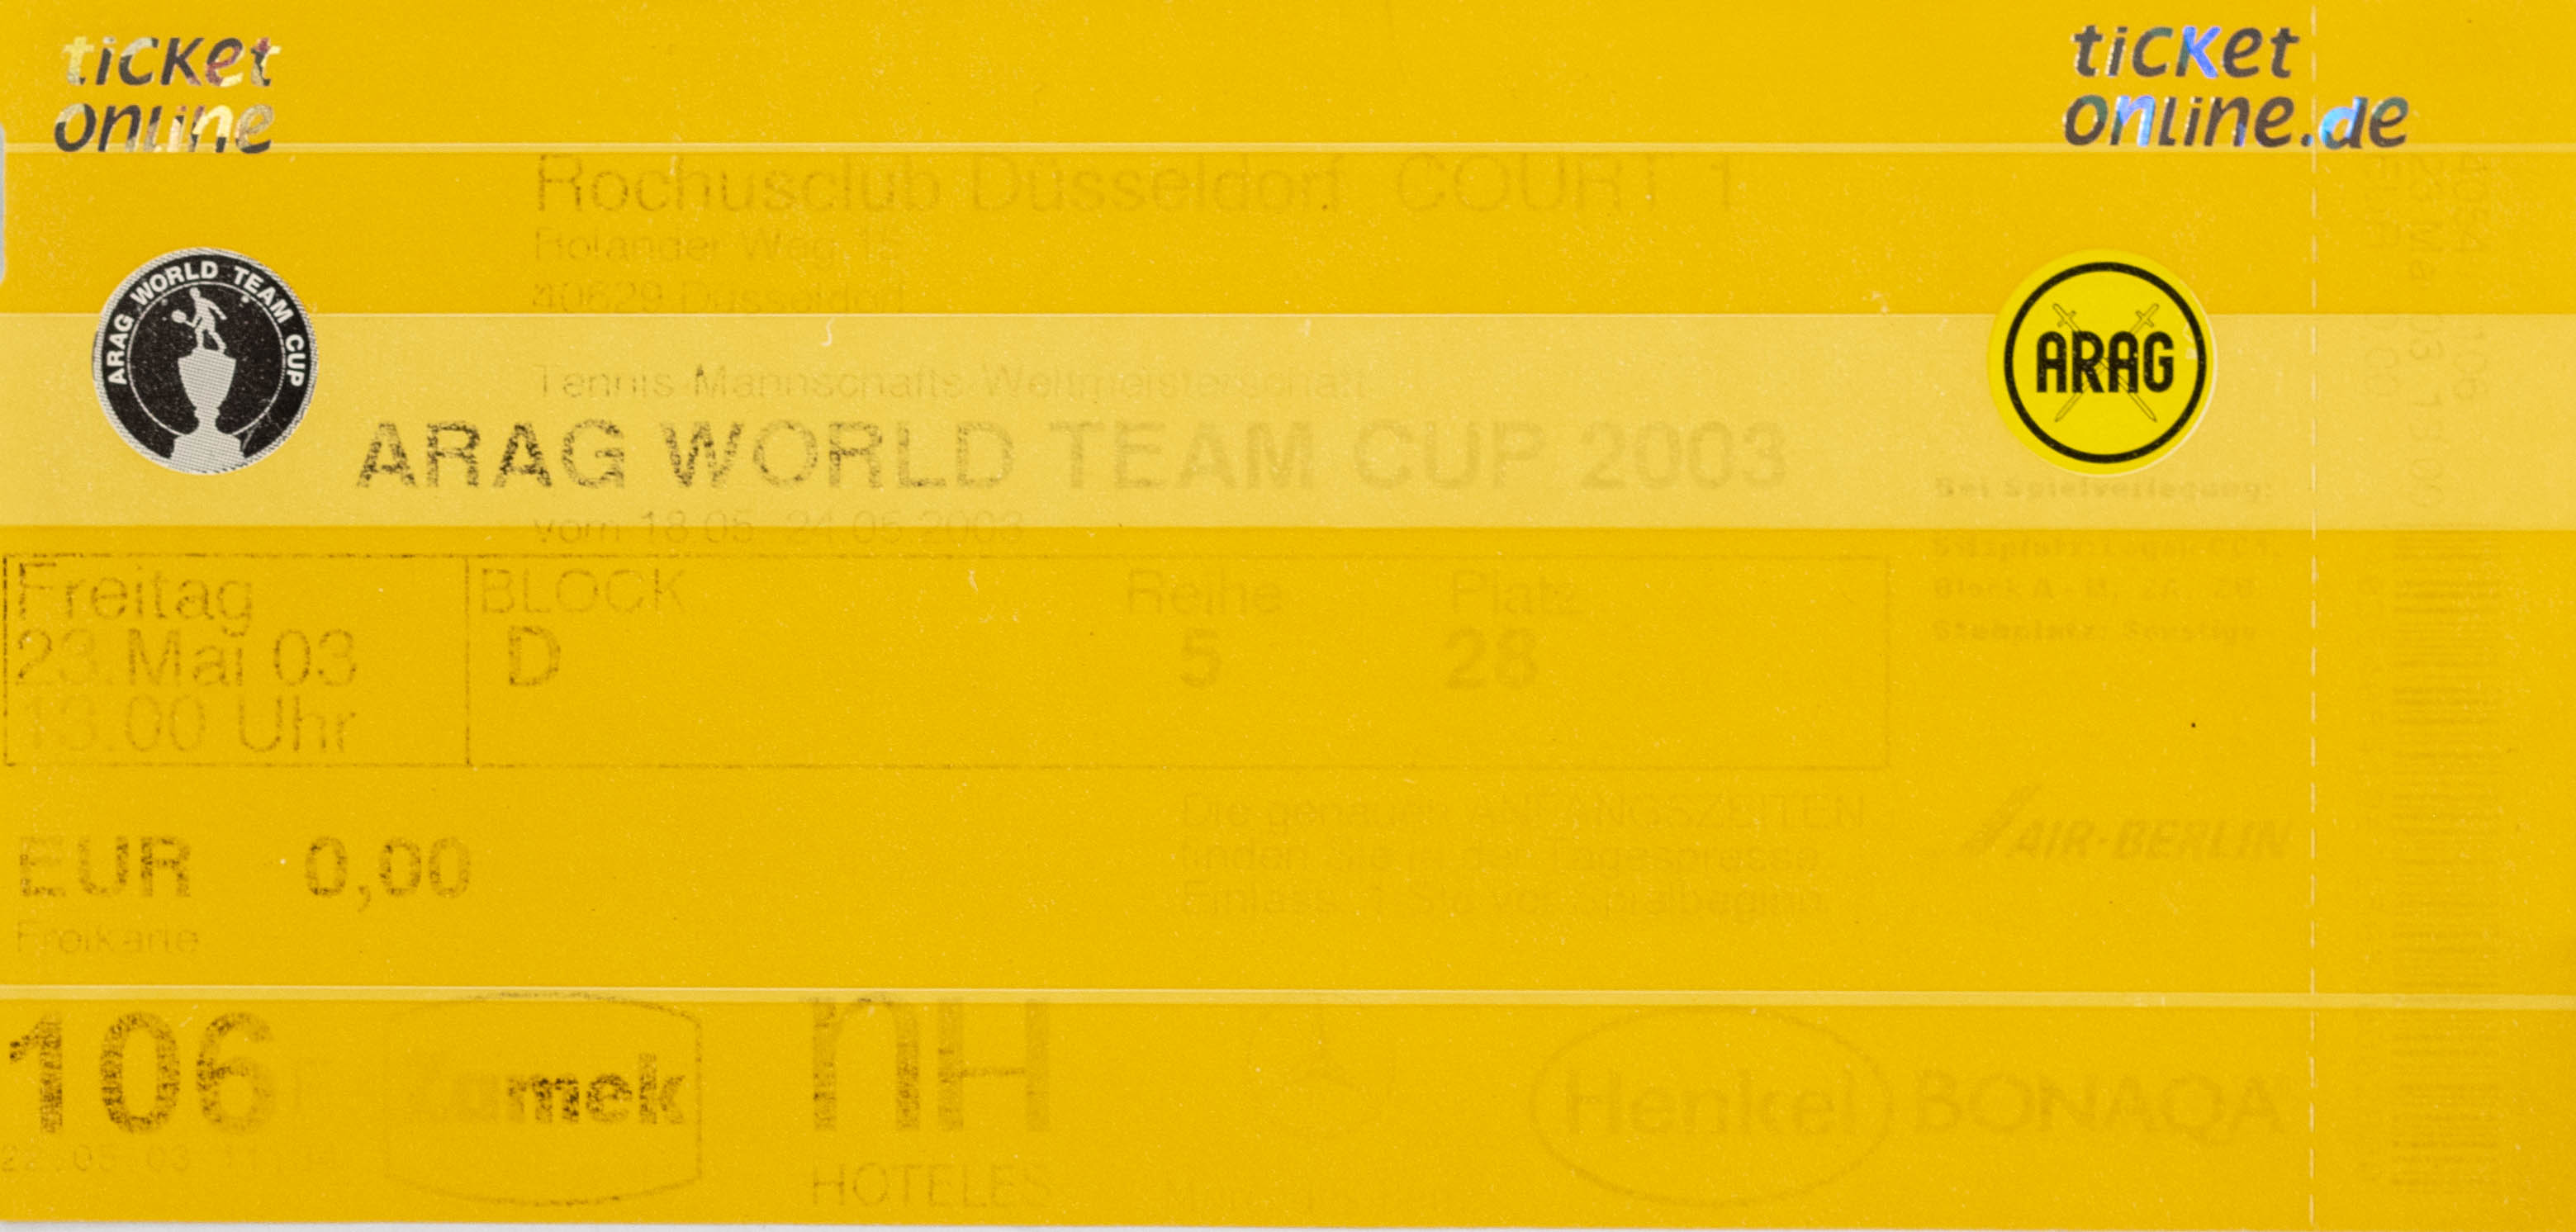 Vstupenka , Arag World team Cup, 2003, Dusseldorf